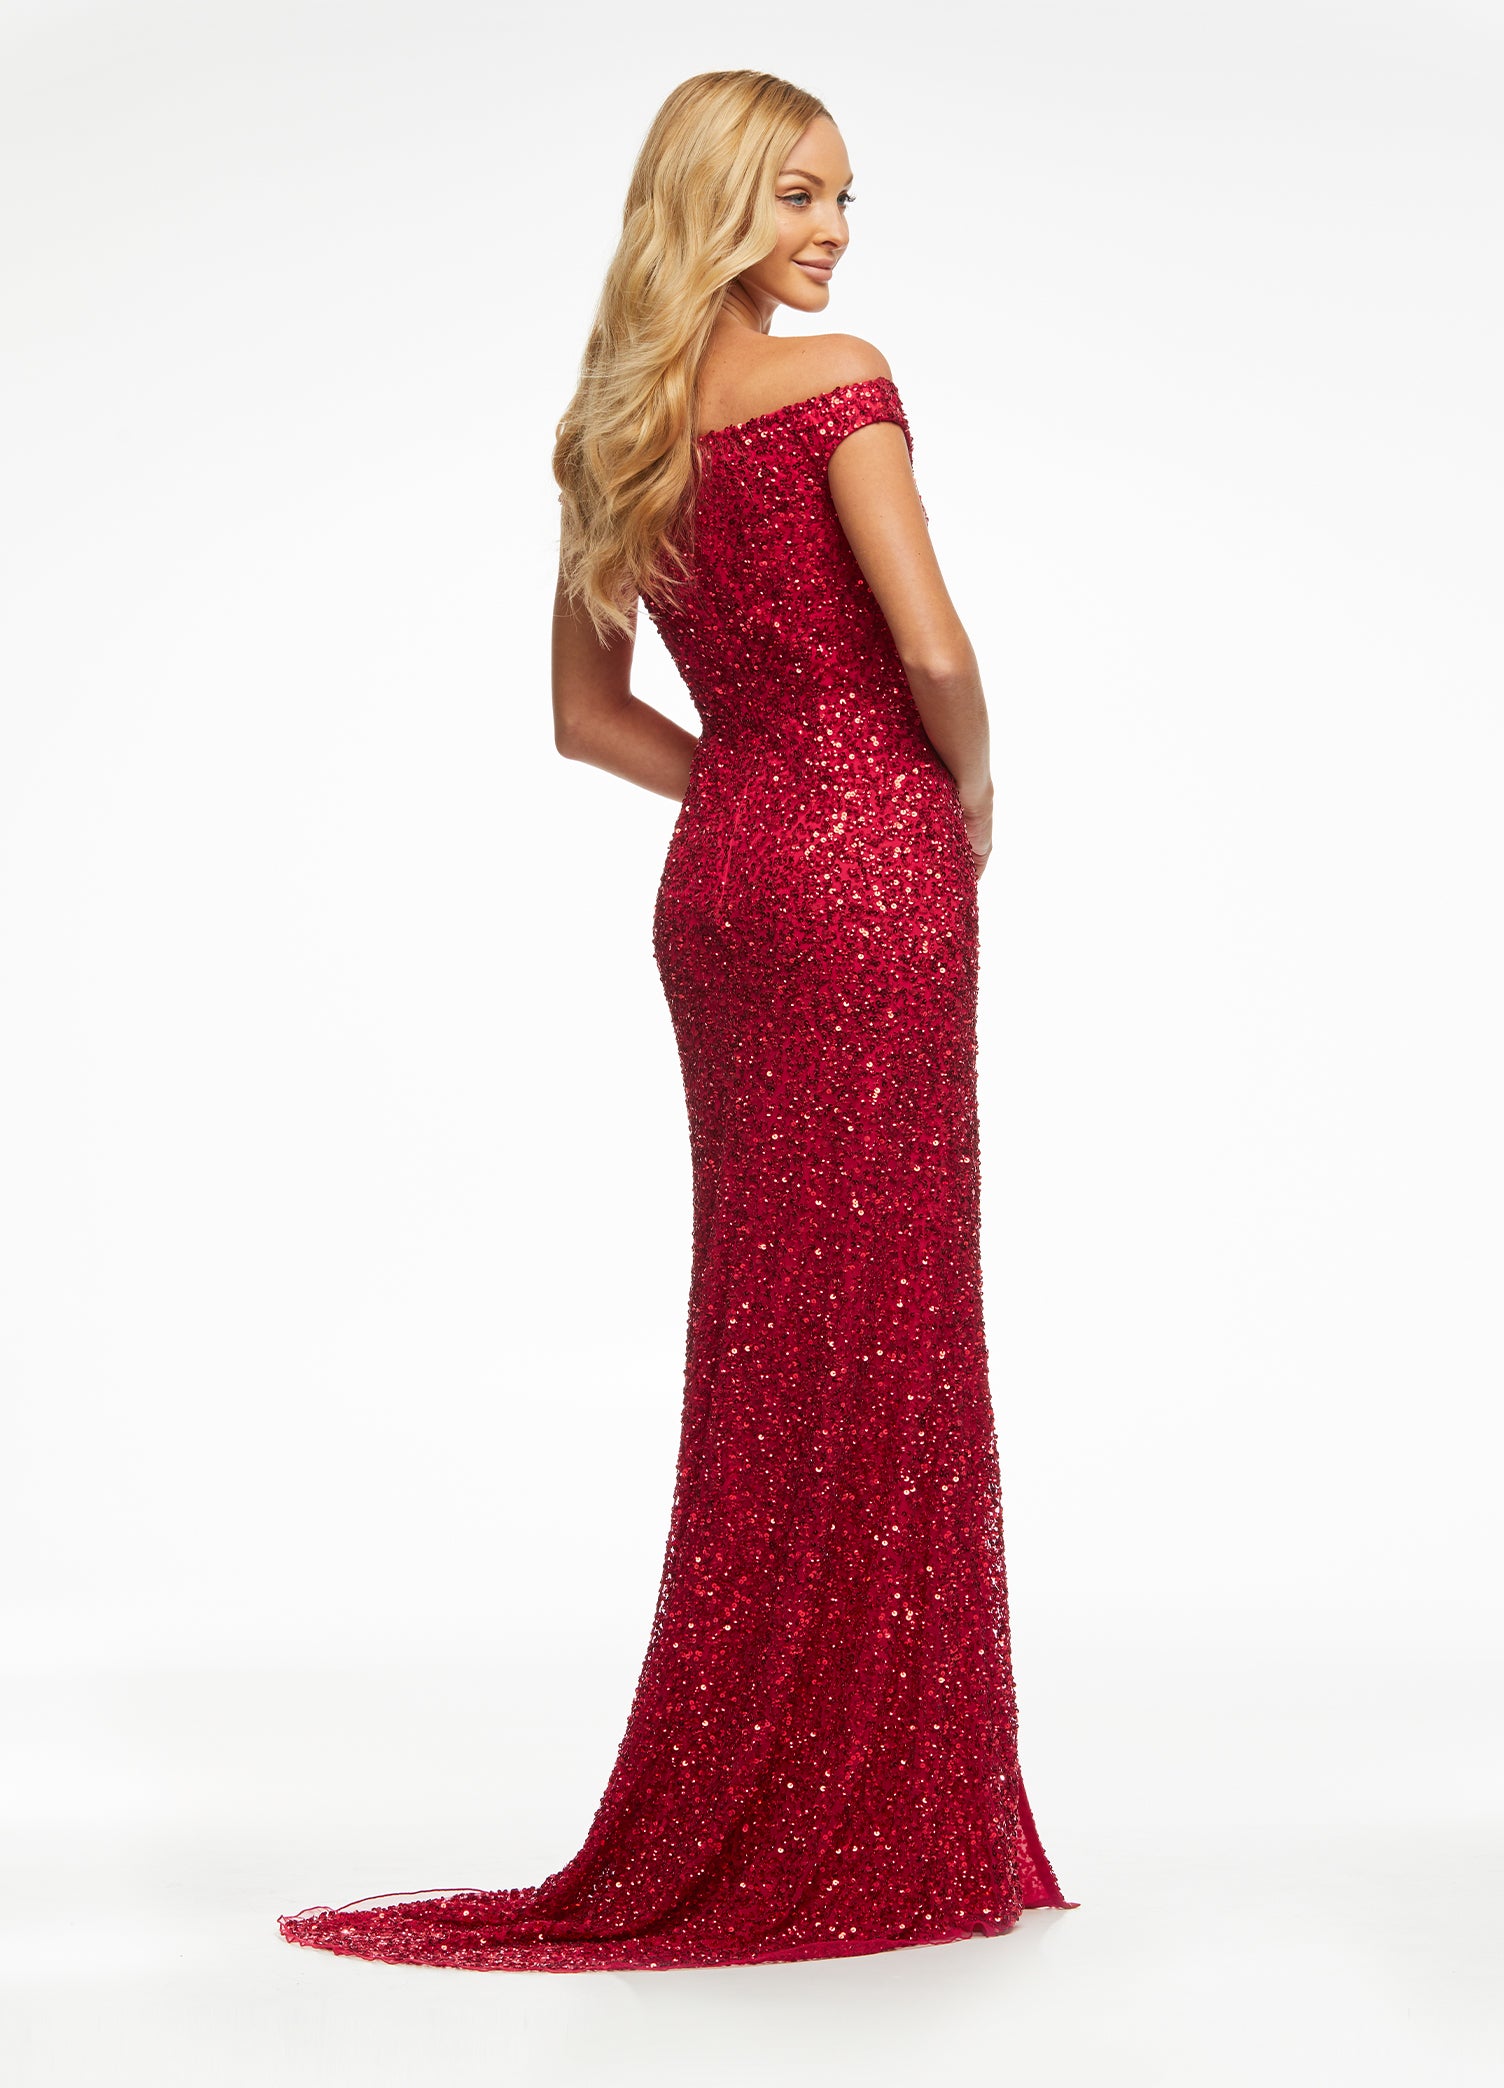 Ashley Lauren 11067 Size 0 Red Prom Dress Off the Shoulder Sequins